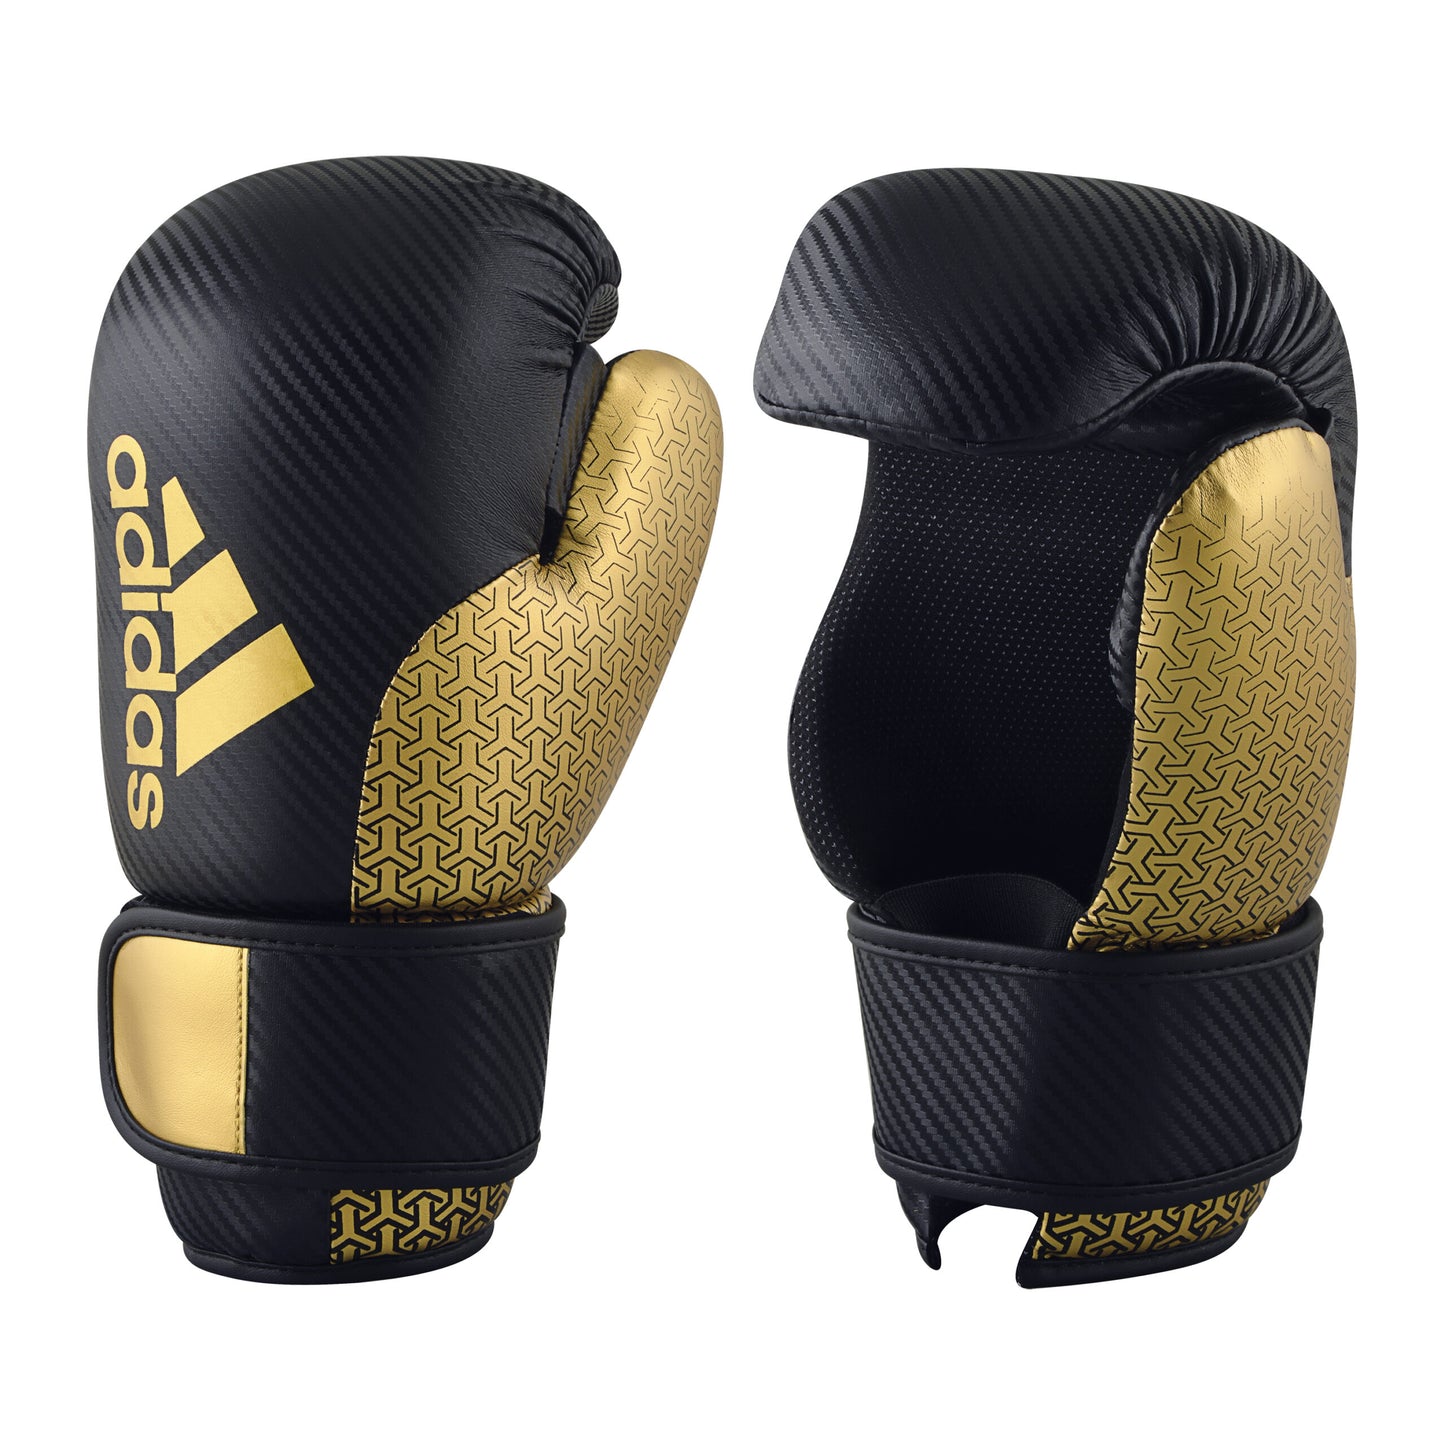 Adidas Wako Pro Point Fighter Glove Black Gold 01